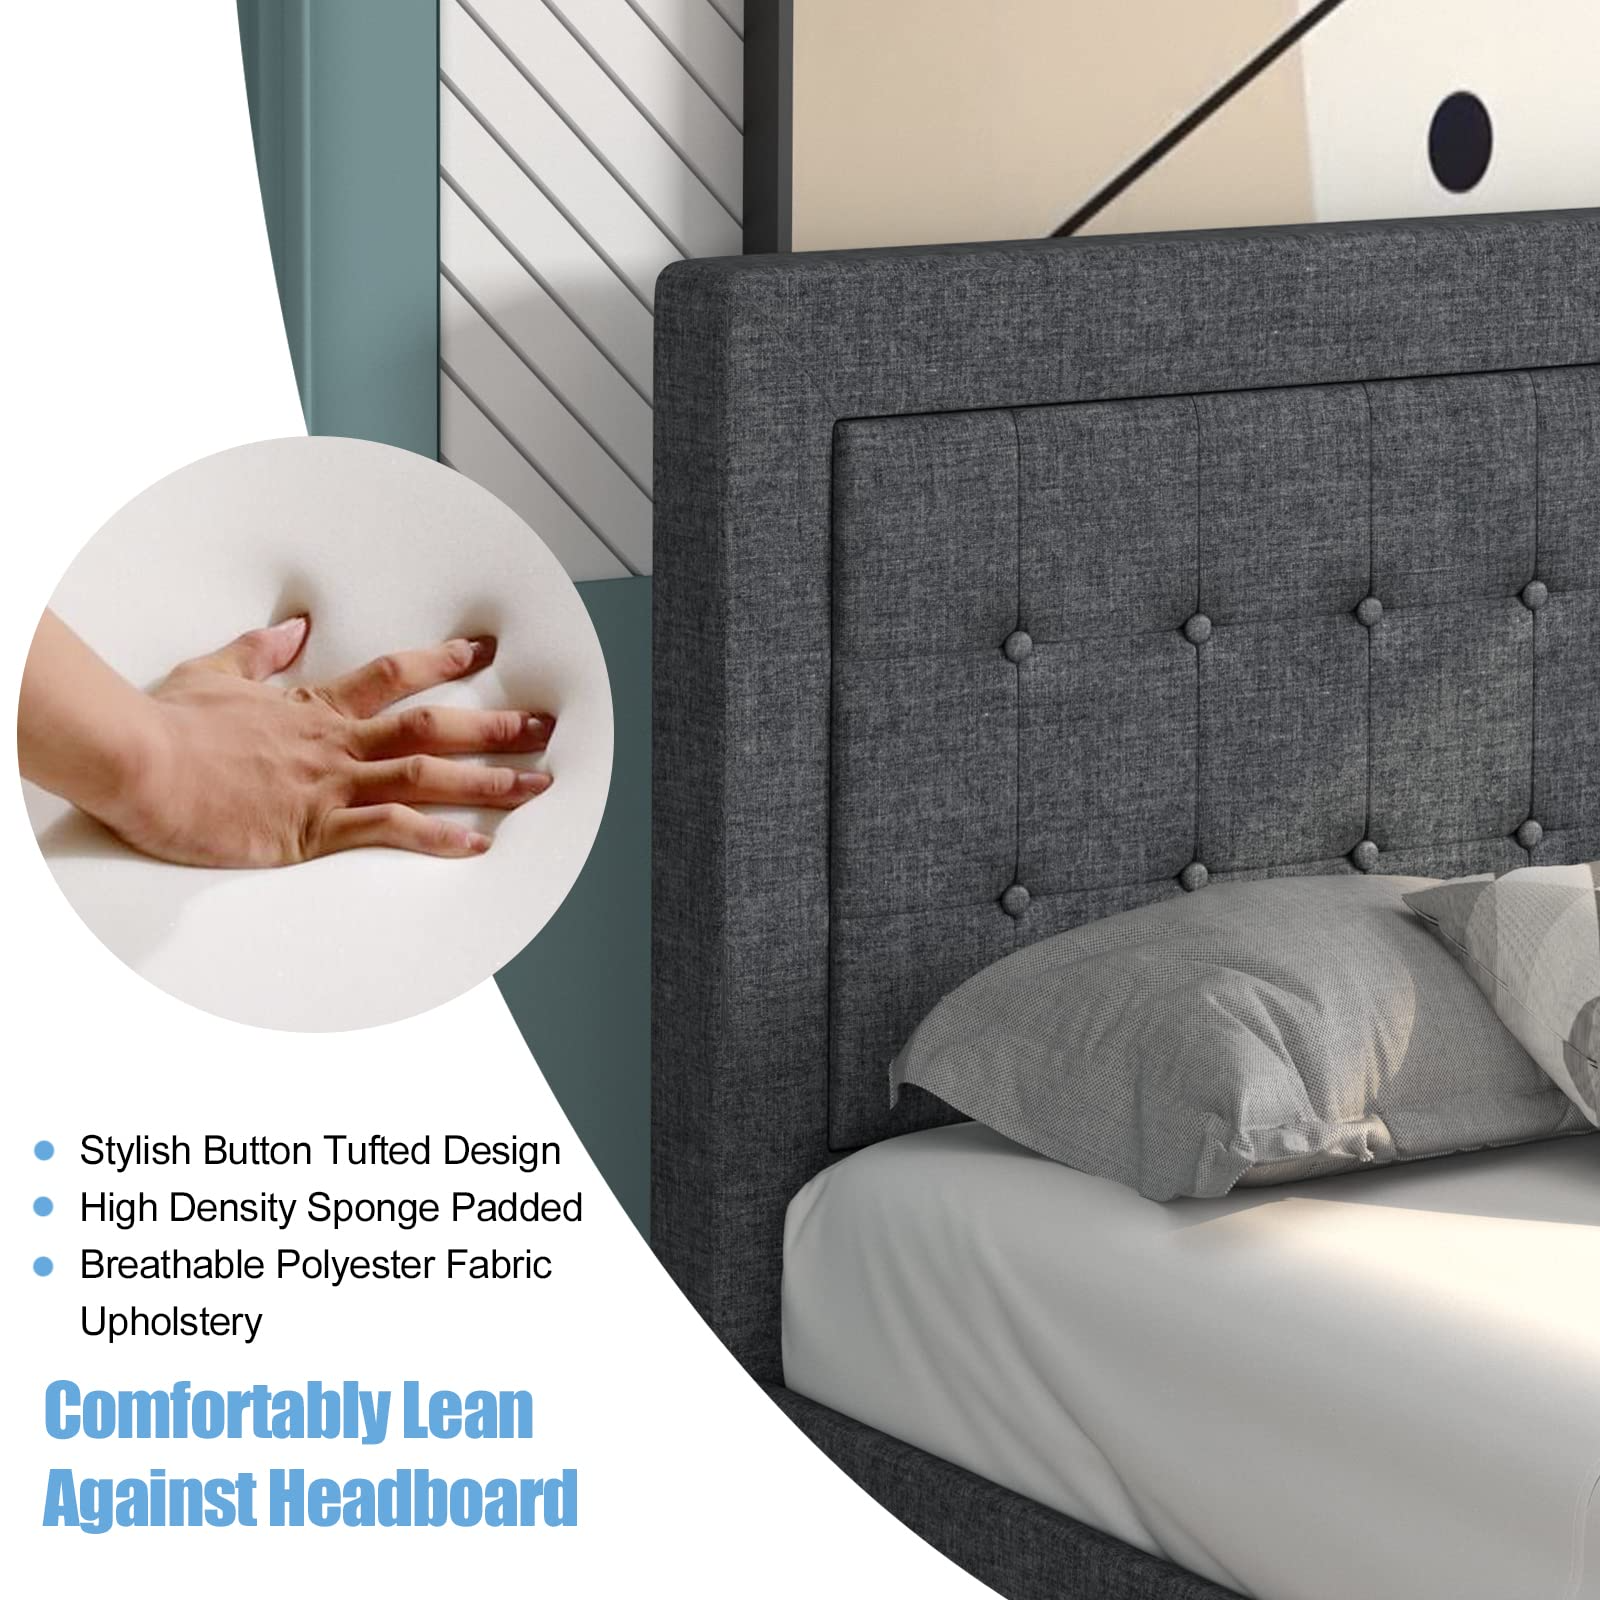 Modern Platform Bed w/Button Tufted Headboard | Upholstered Bed Frame